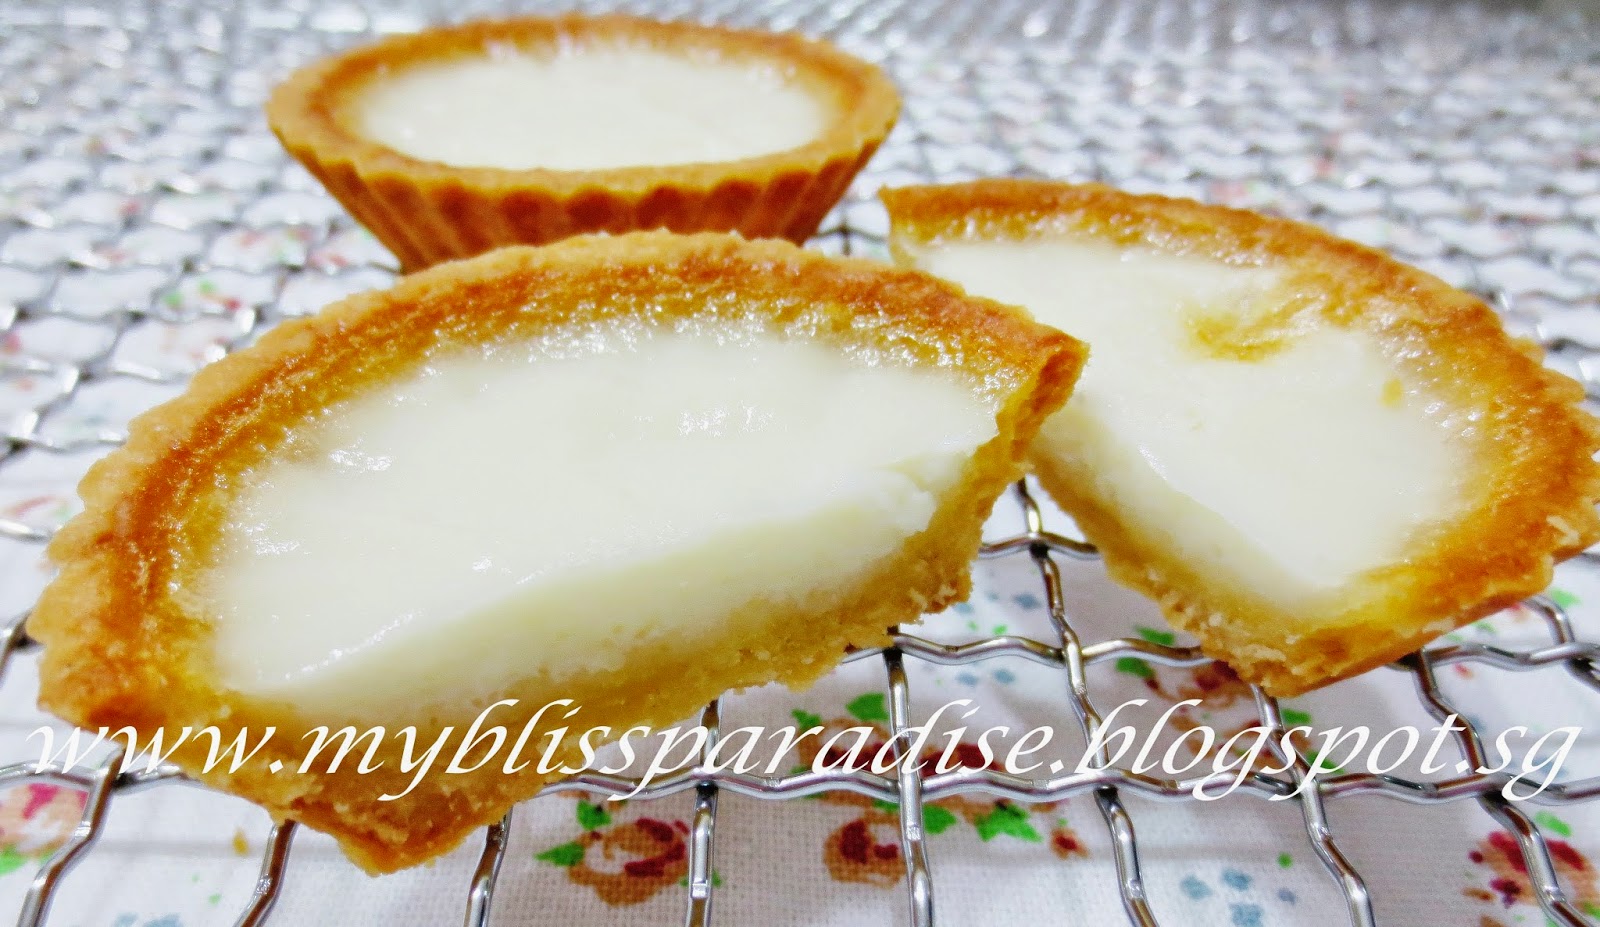 http://myblissparadise.blogspot.sg/2014/06/angel-milky-egg-white-tarts-27-jun-14.html